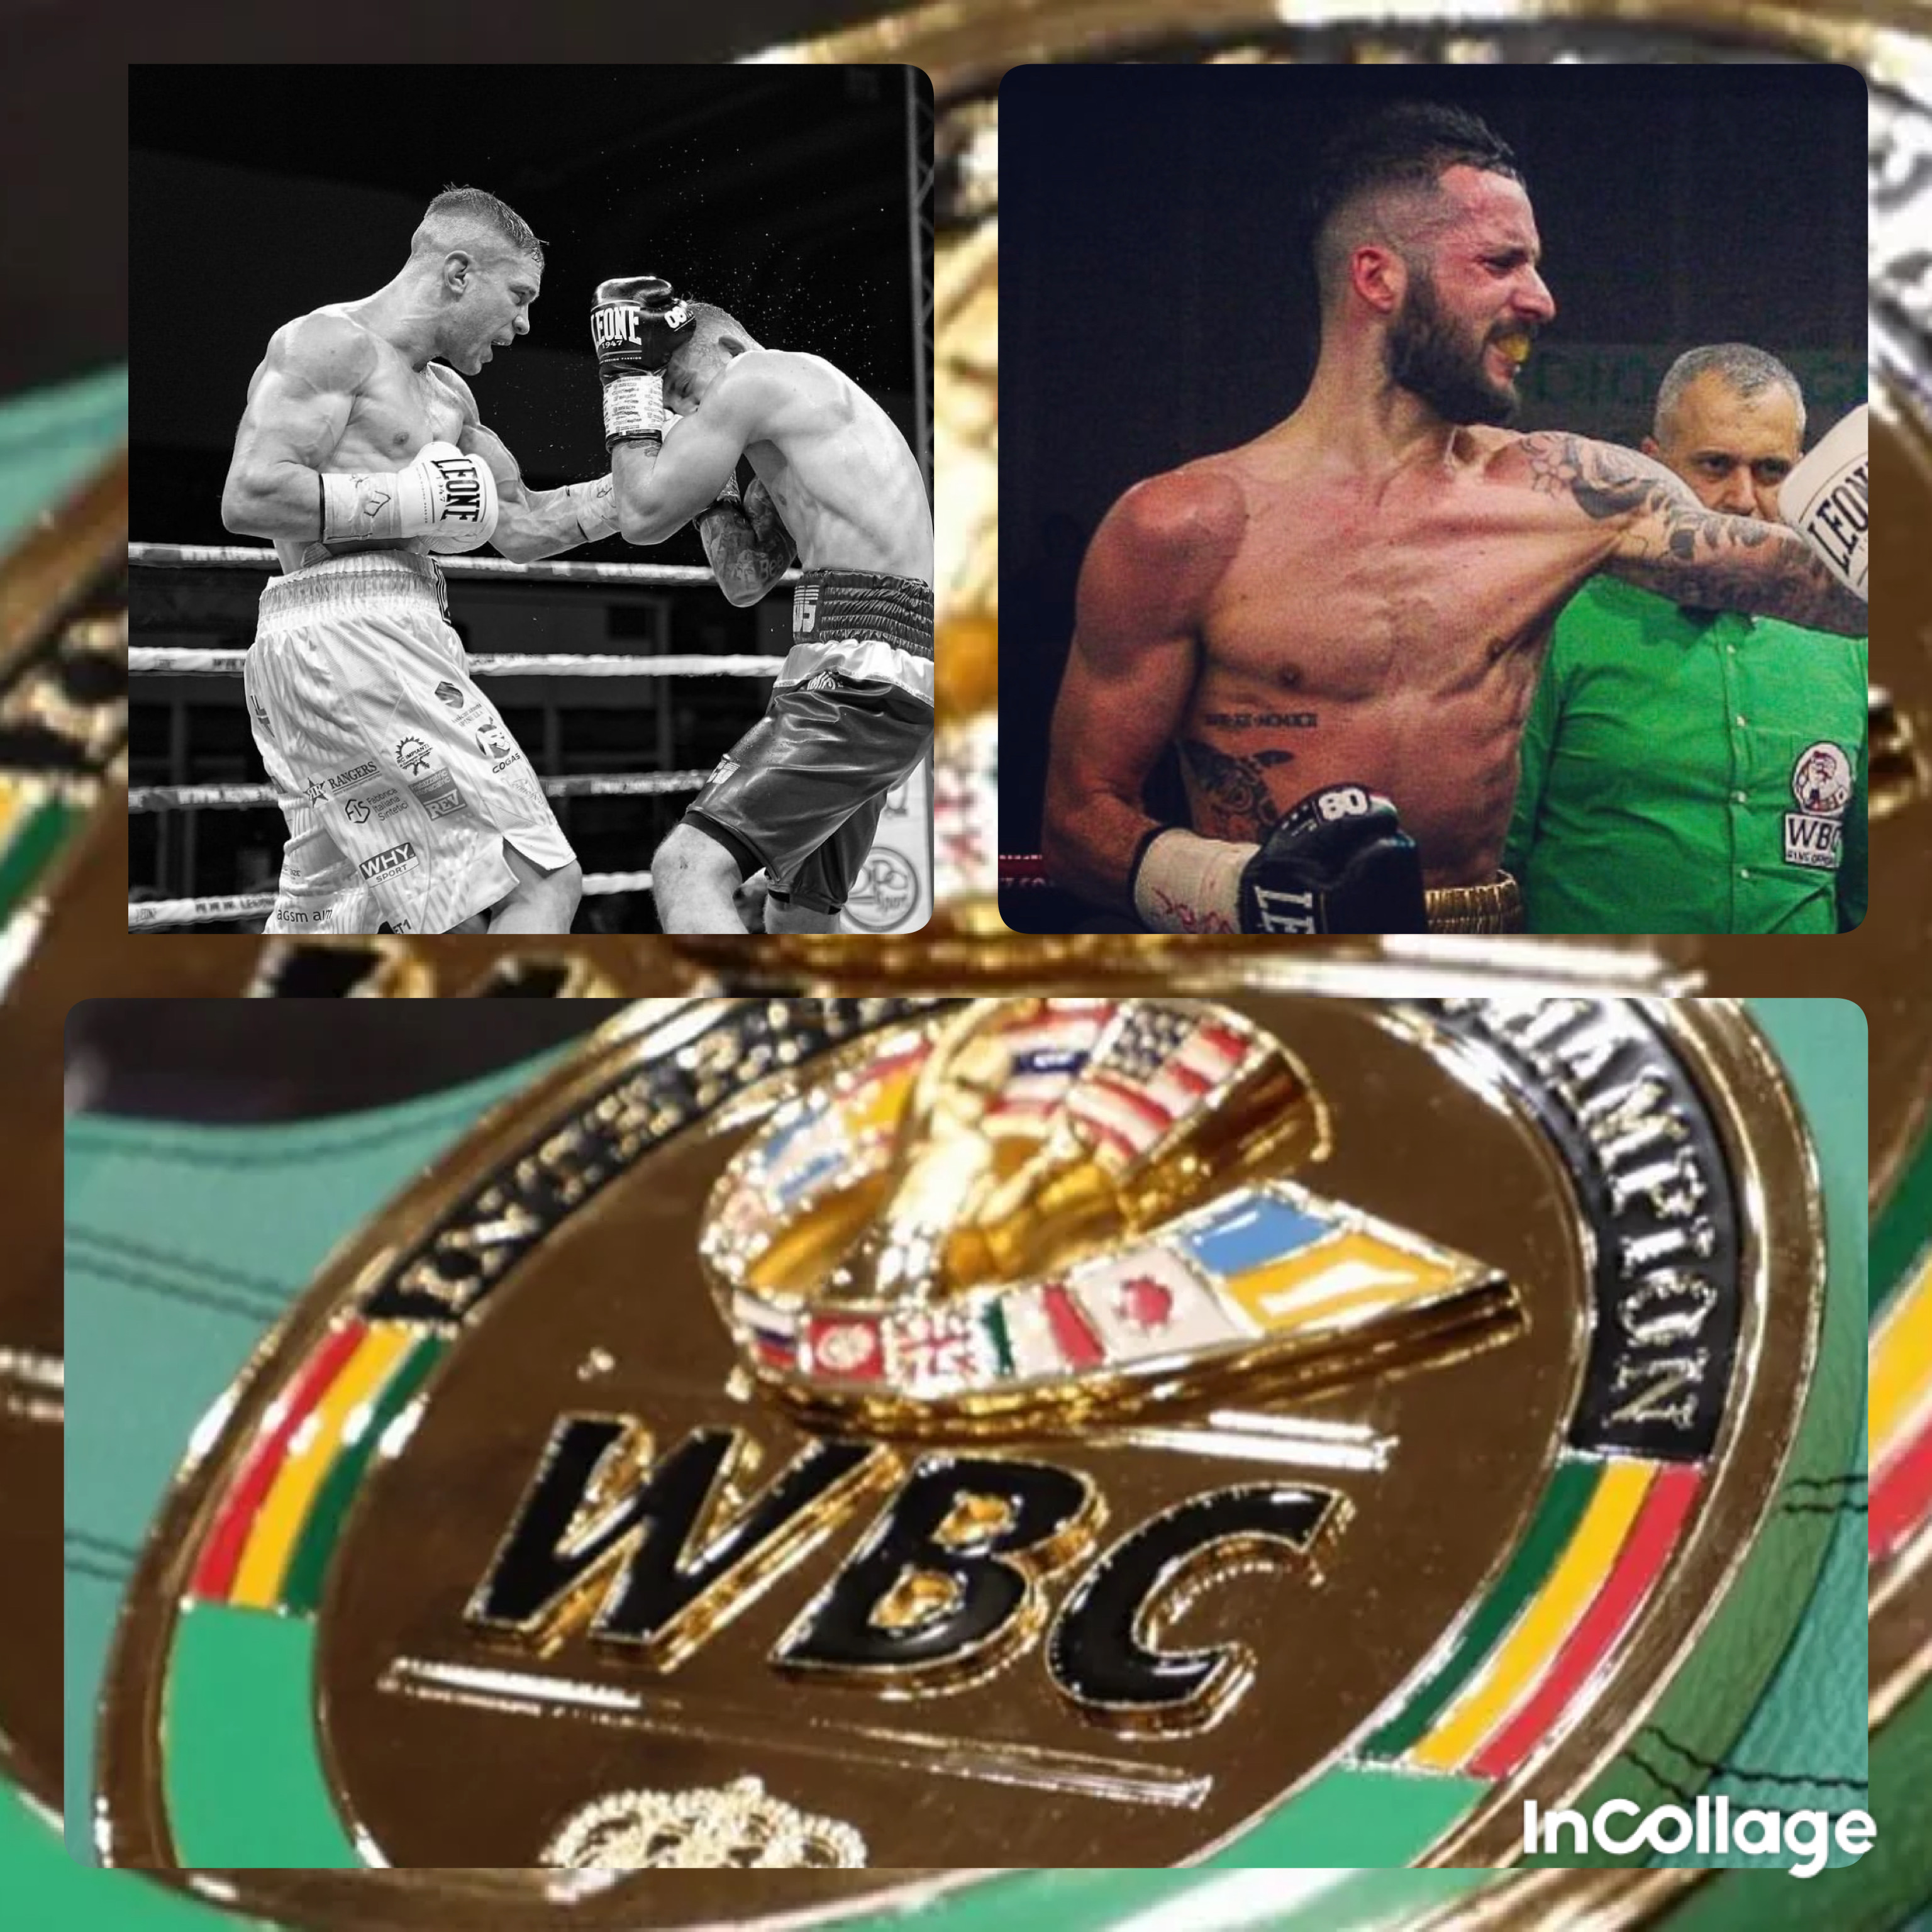 Il 17 novembre p.v. a Rovigo Tassi vs Rigoldi per il WBC Internazionale PIUMA